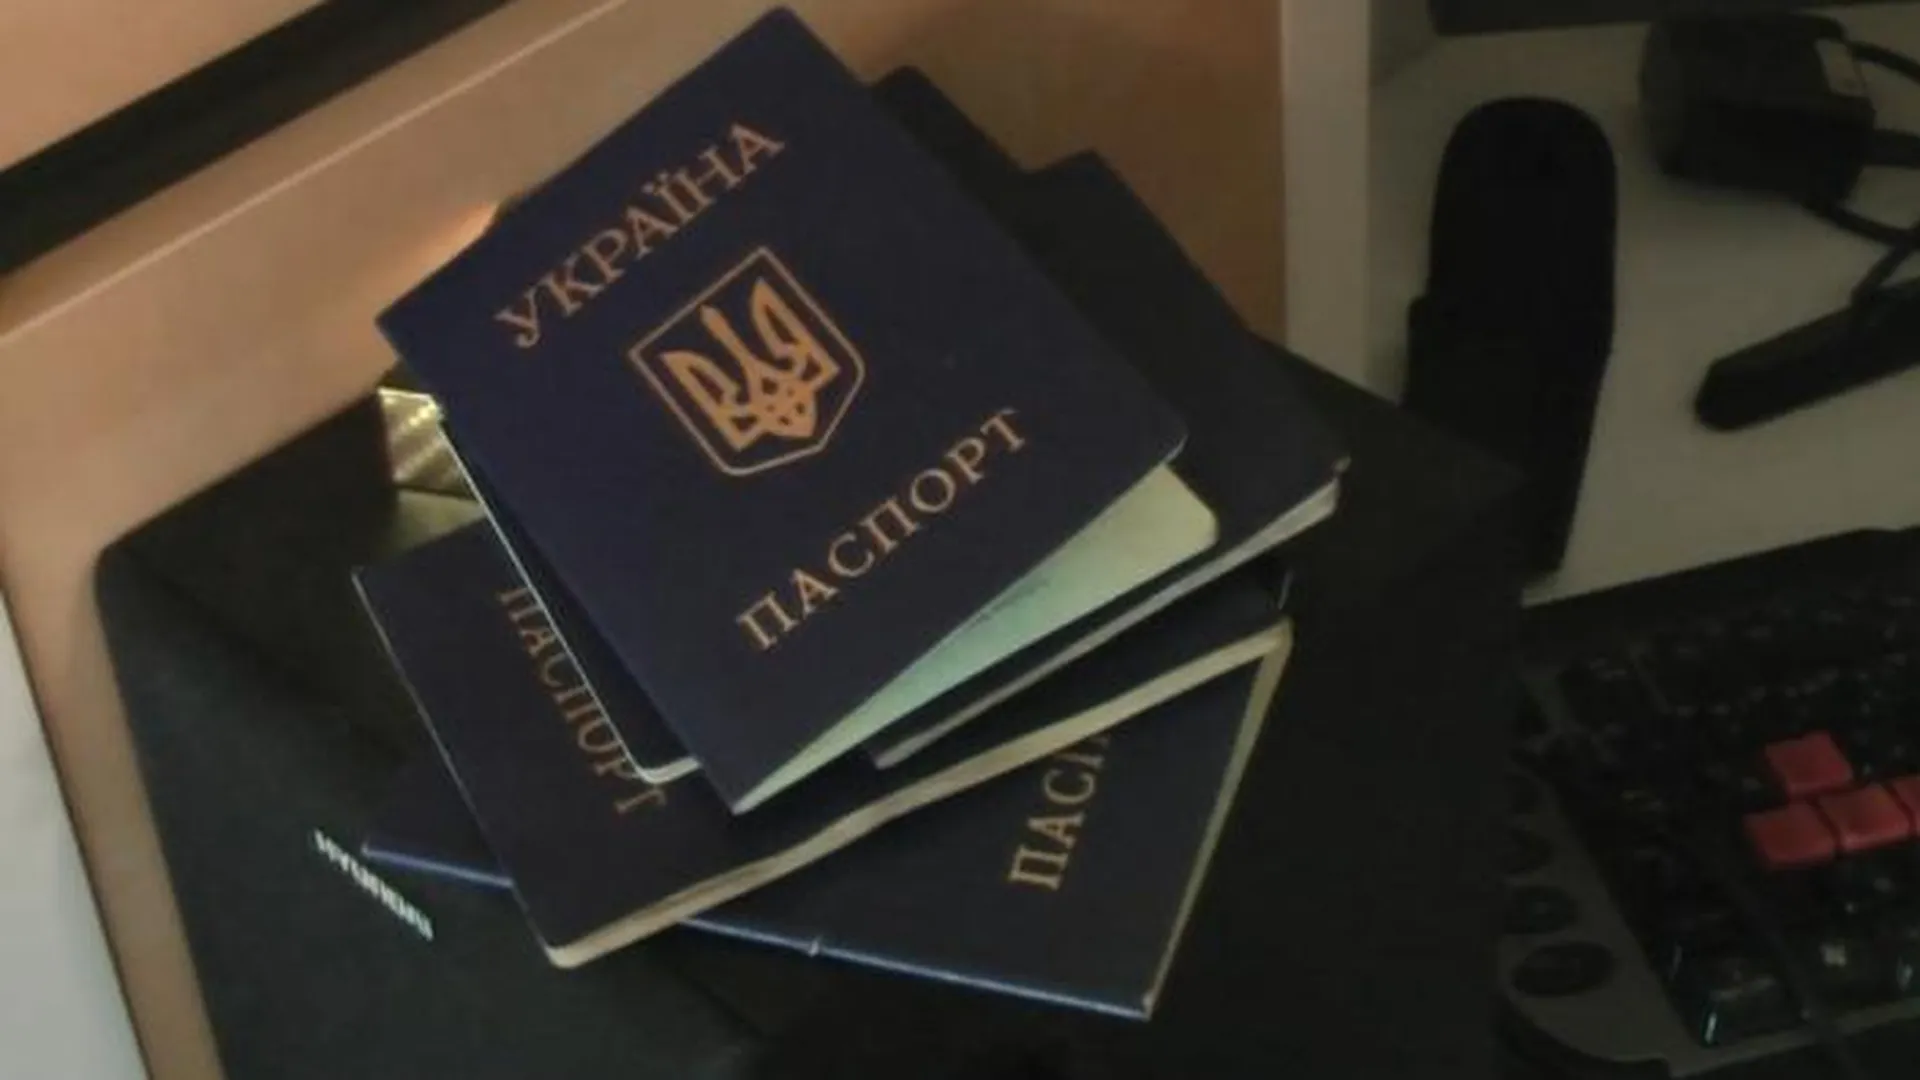 Украинские паспорта, найденные у задержанных членов неонацистской террористической организации National Socialism/White Power (запрещена на территории России), планировавших по заданию Службы безопасности Украины убийства известных российских журналистов